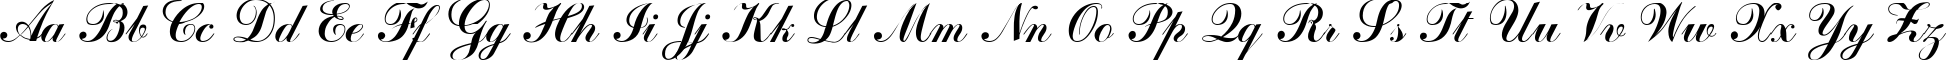 Пример написания английского алфавита шрифтом ArtScript